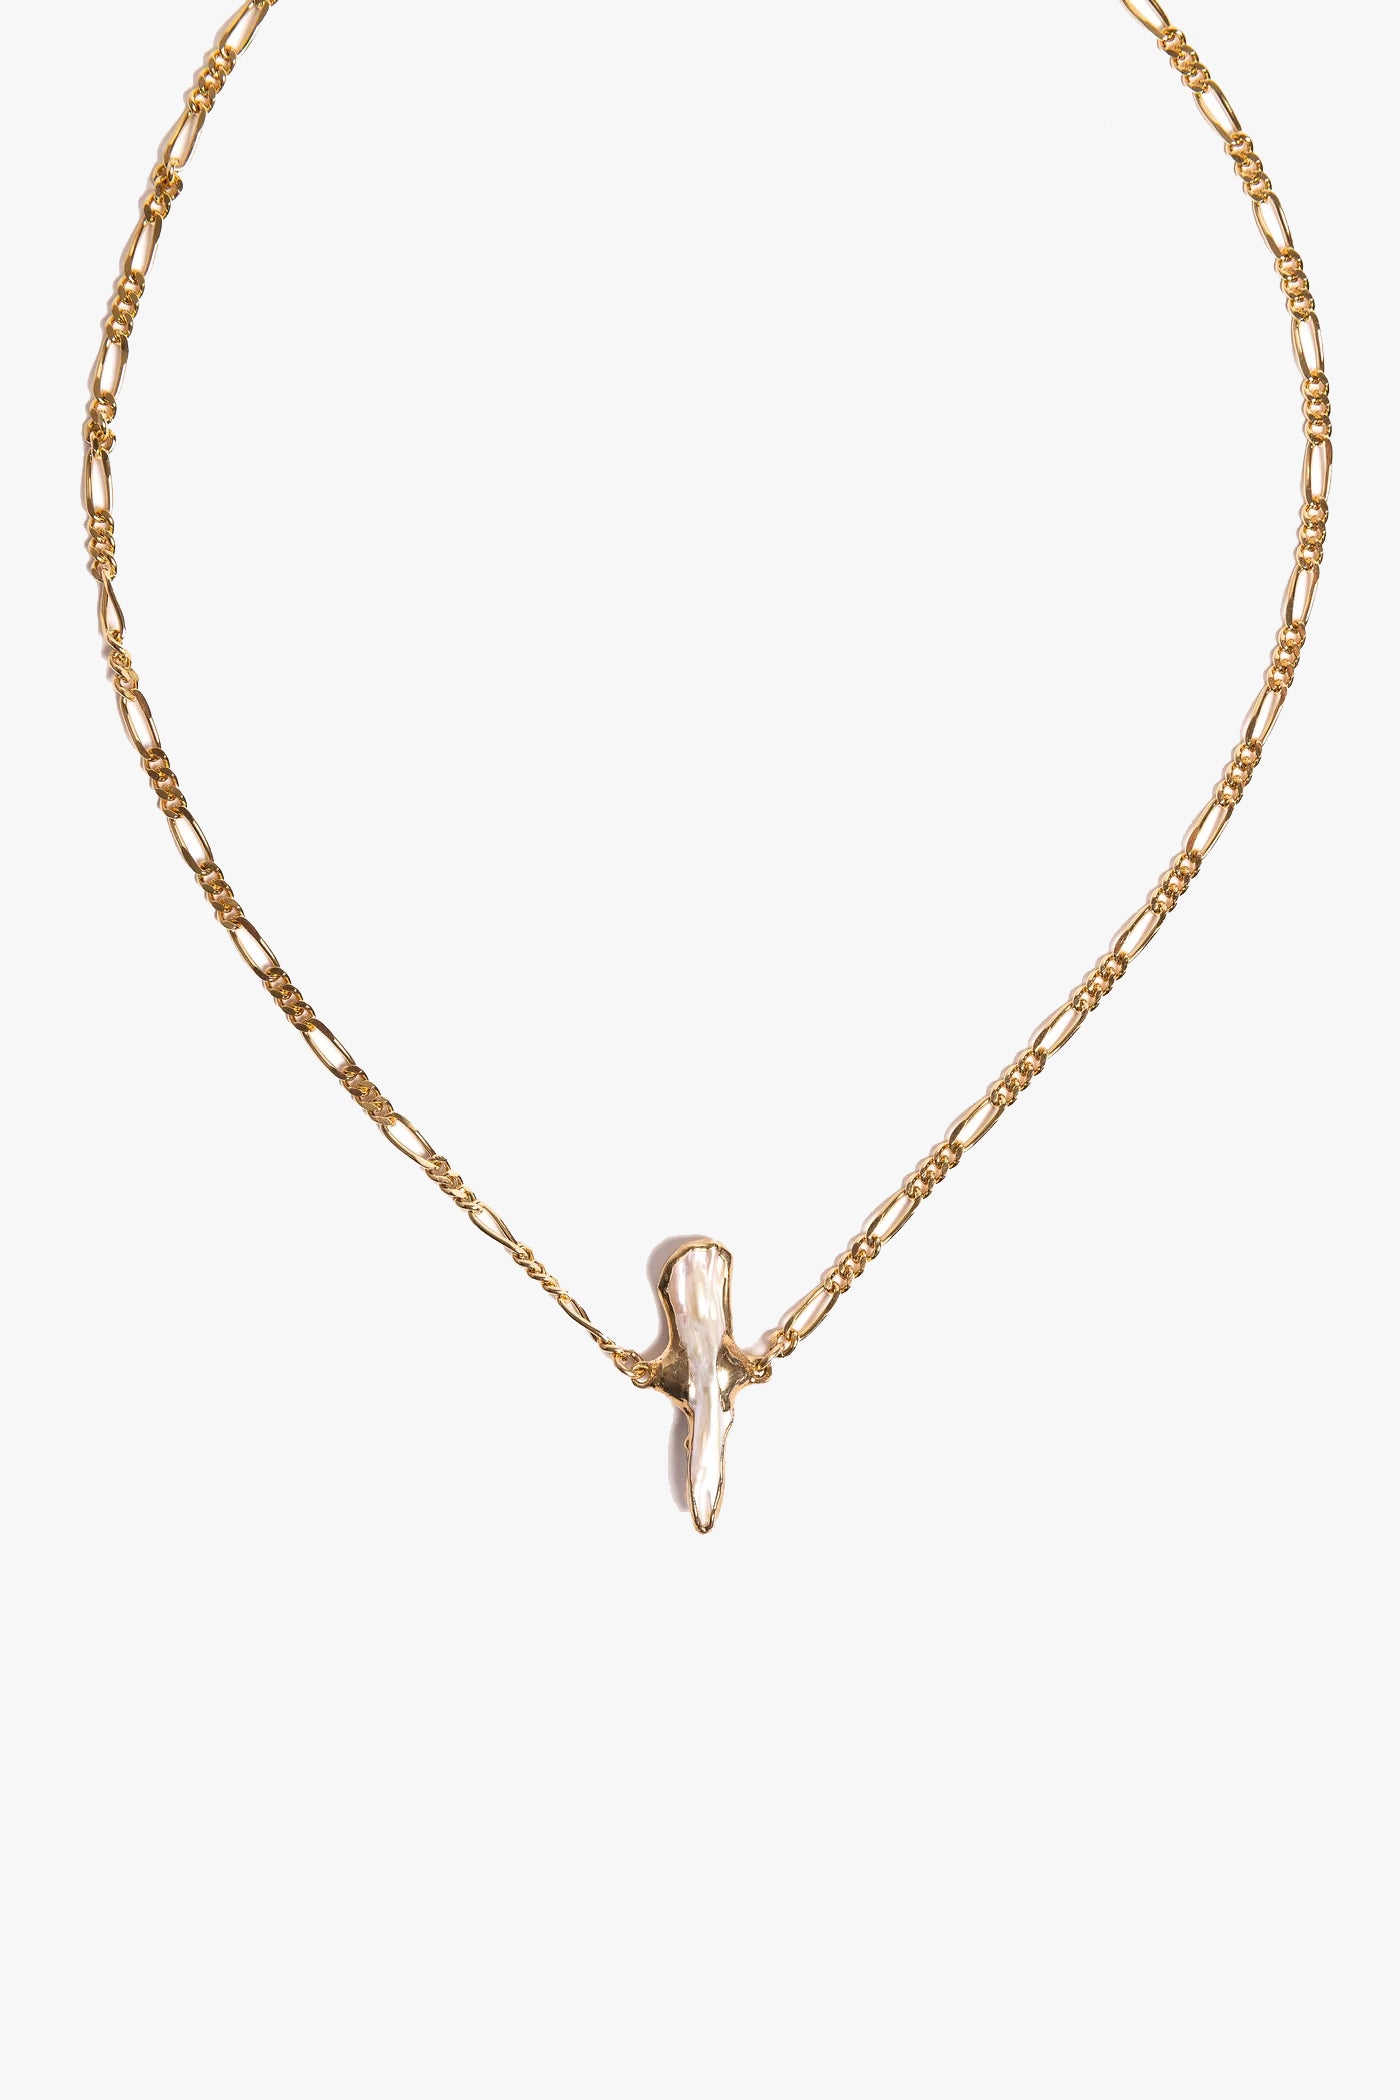 Lisa Marie Jewelry Keshi Pearl on 24k Chain